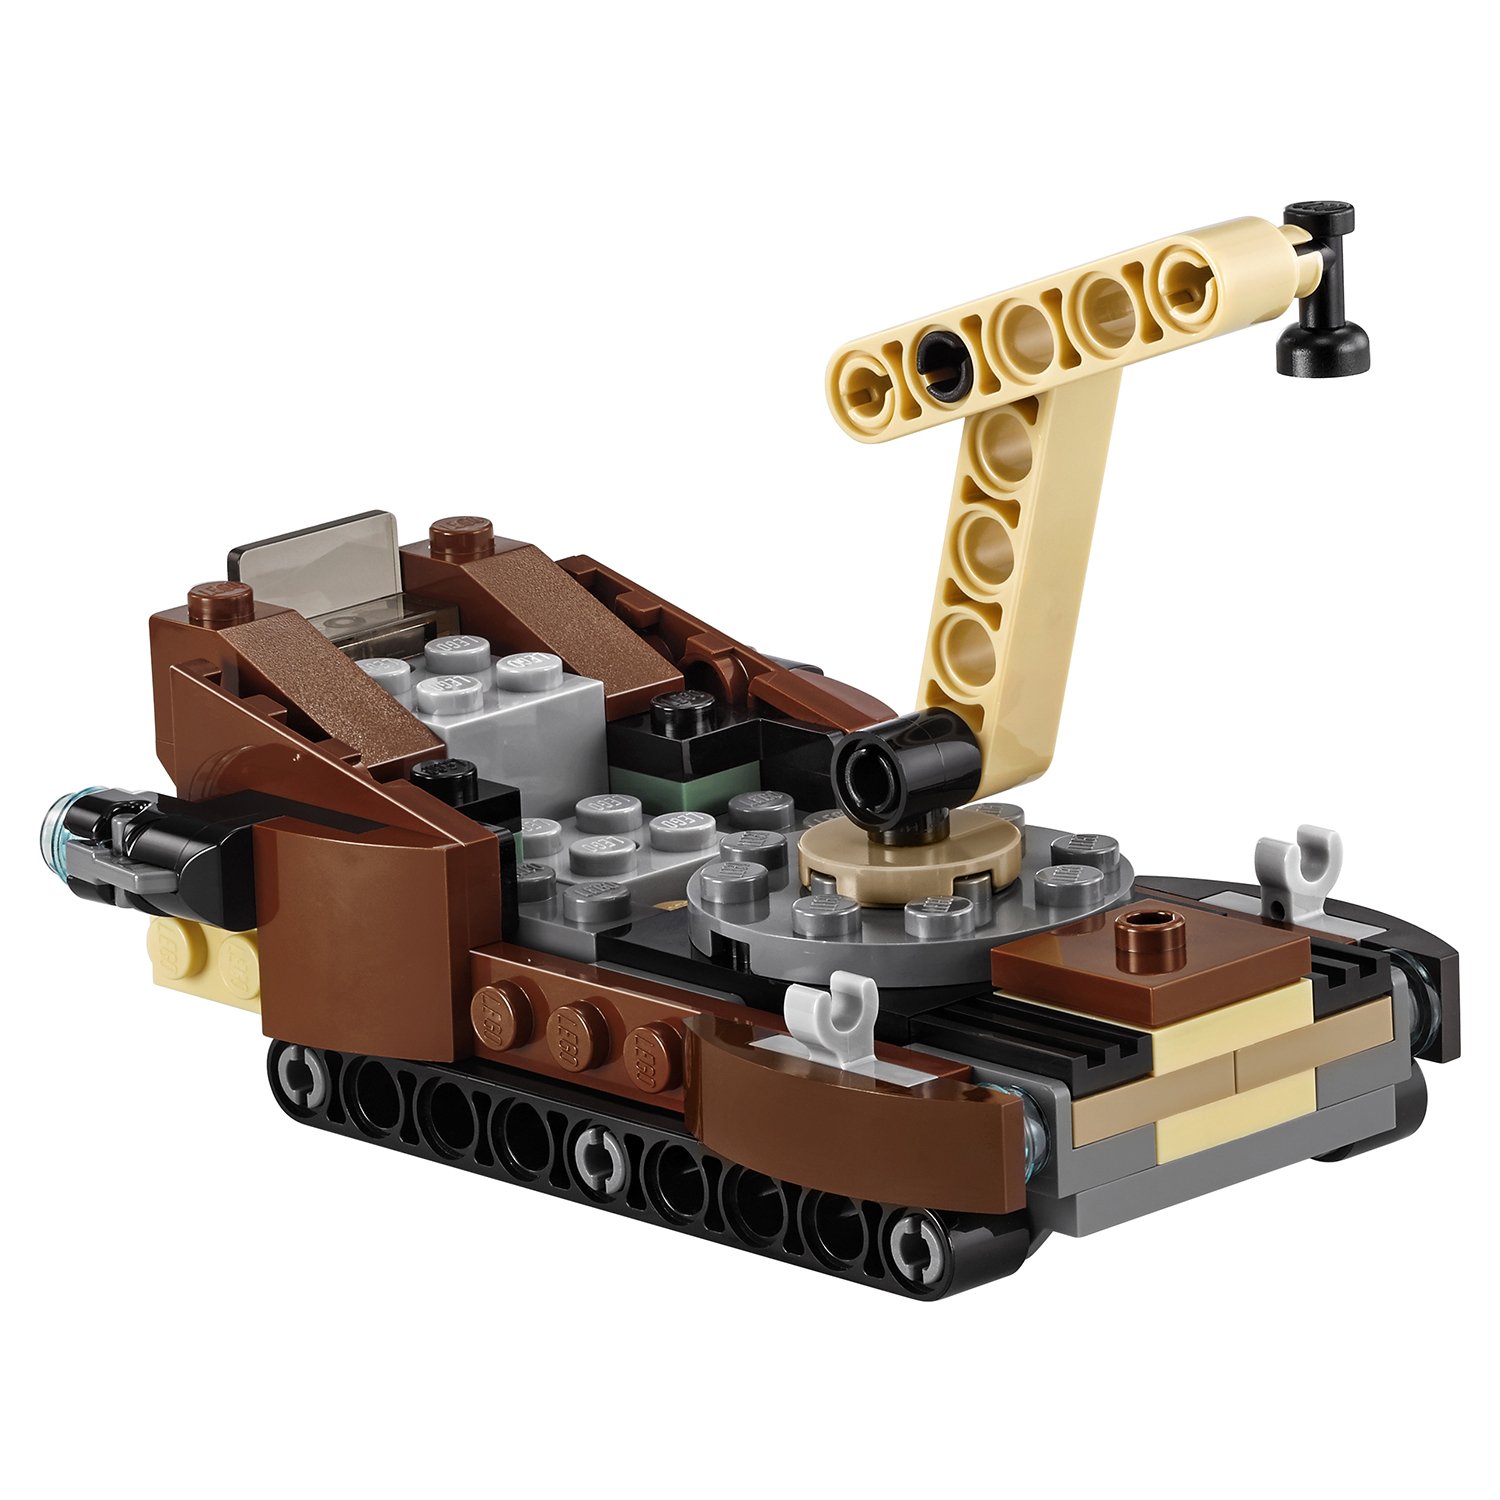 Конструктор Lego Star Wars - Боевой набор планеты Татуин  